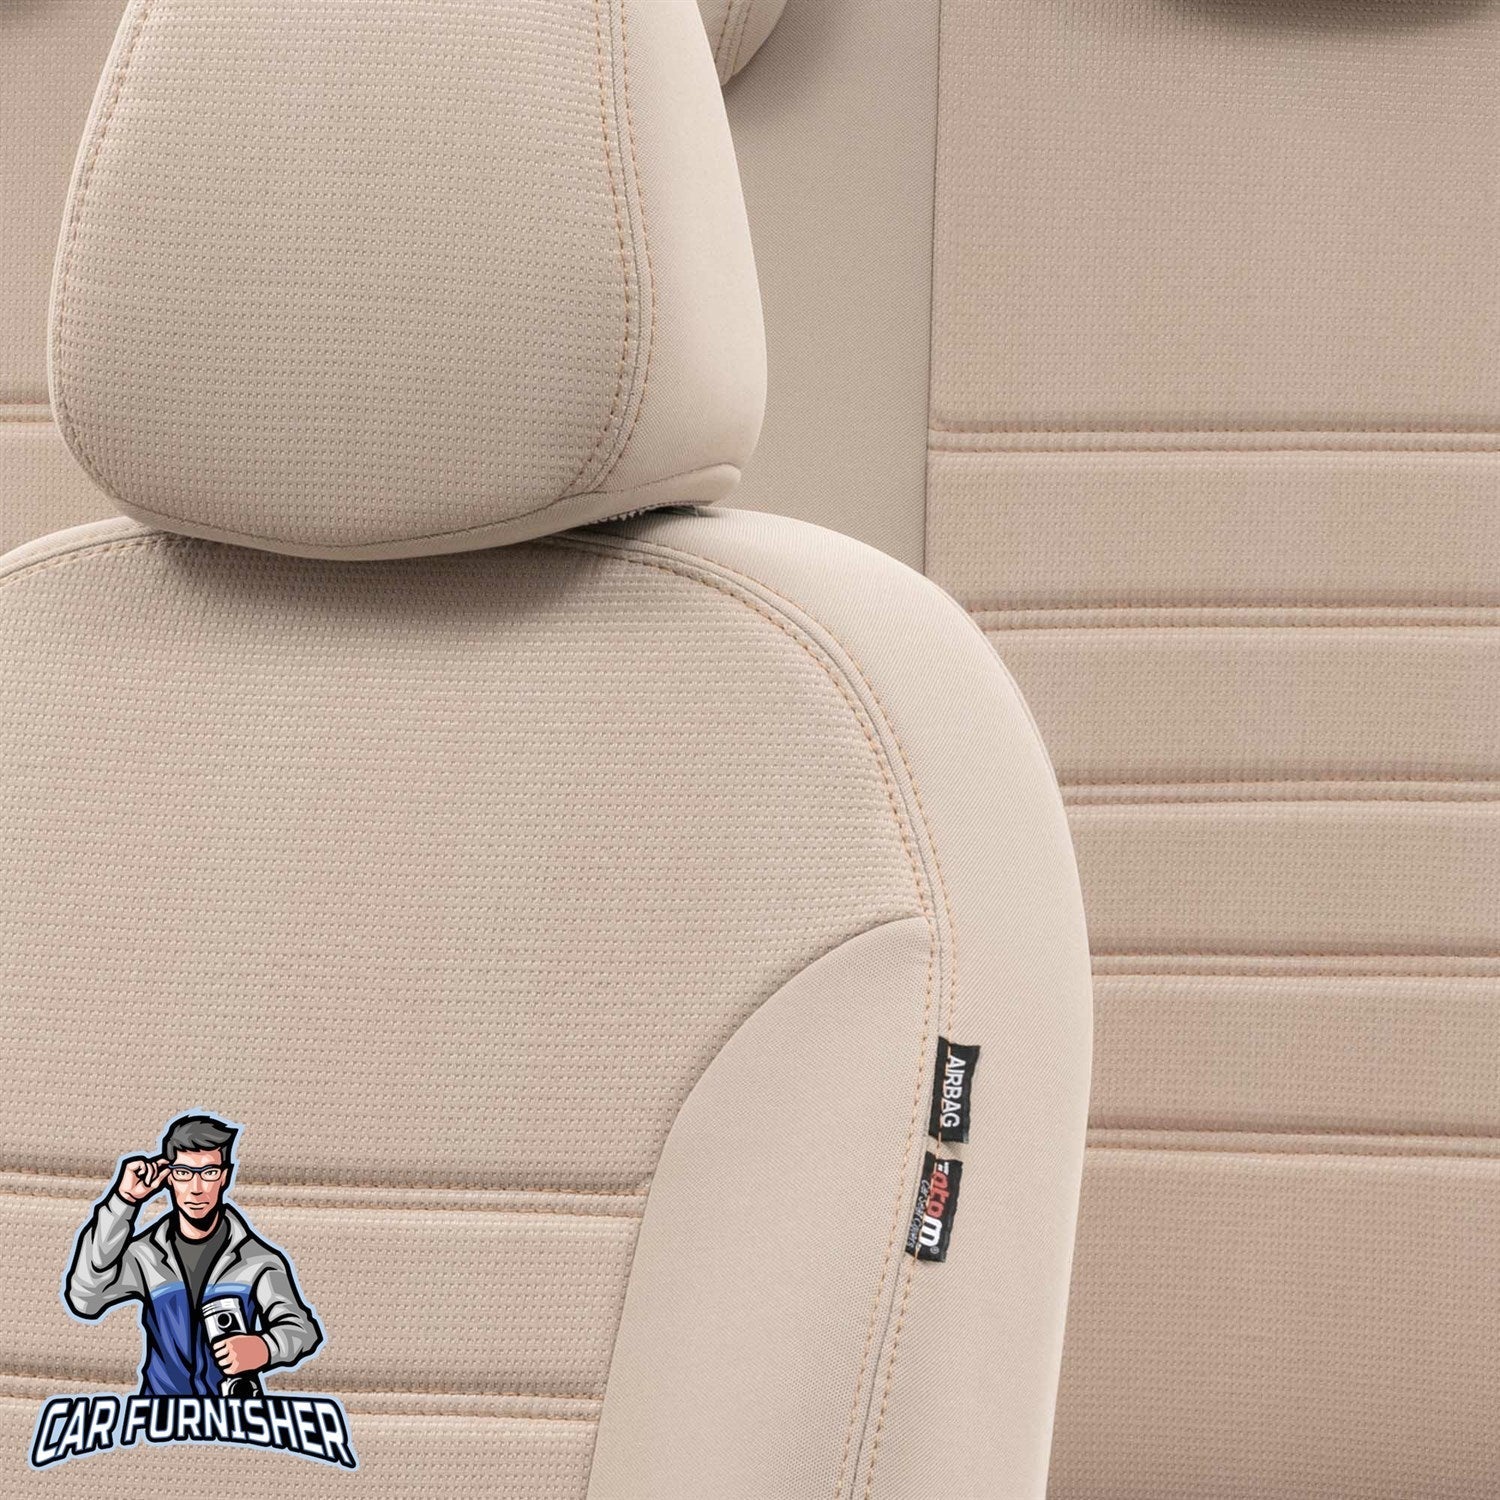 Audi Q2 Car Seat Cover 2016-2023 Custom Original Design Beige Full Set (5 Seats + Handrest) Fabric